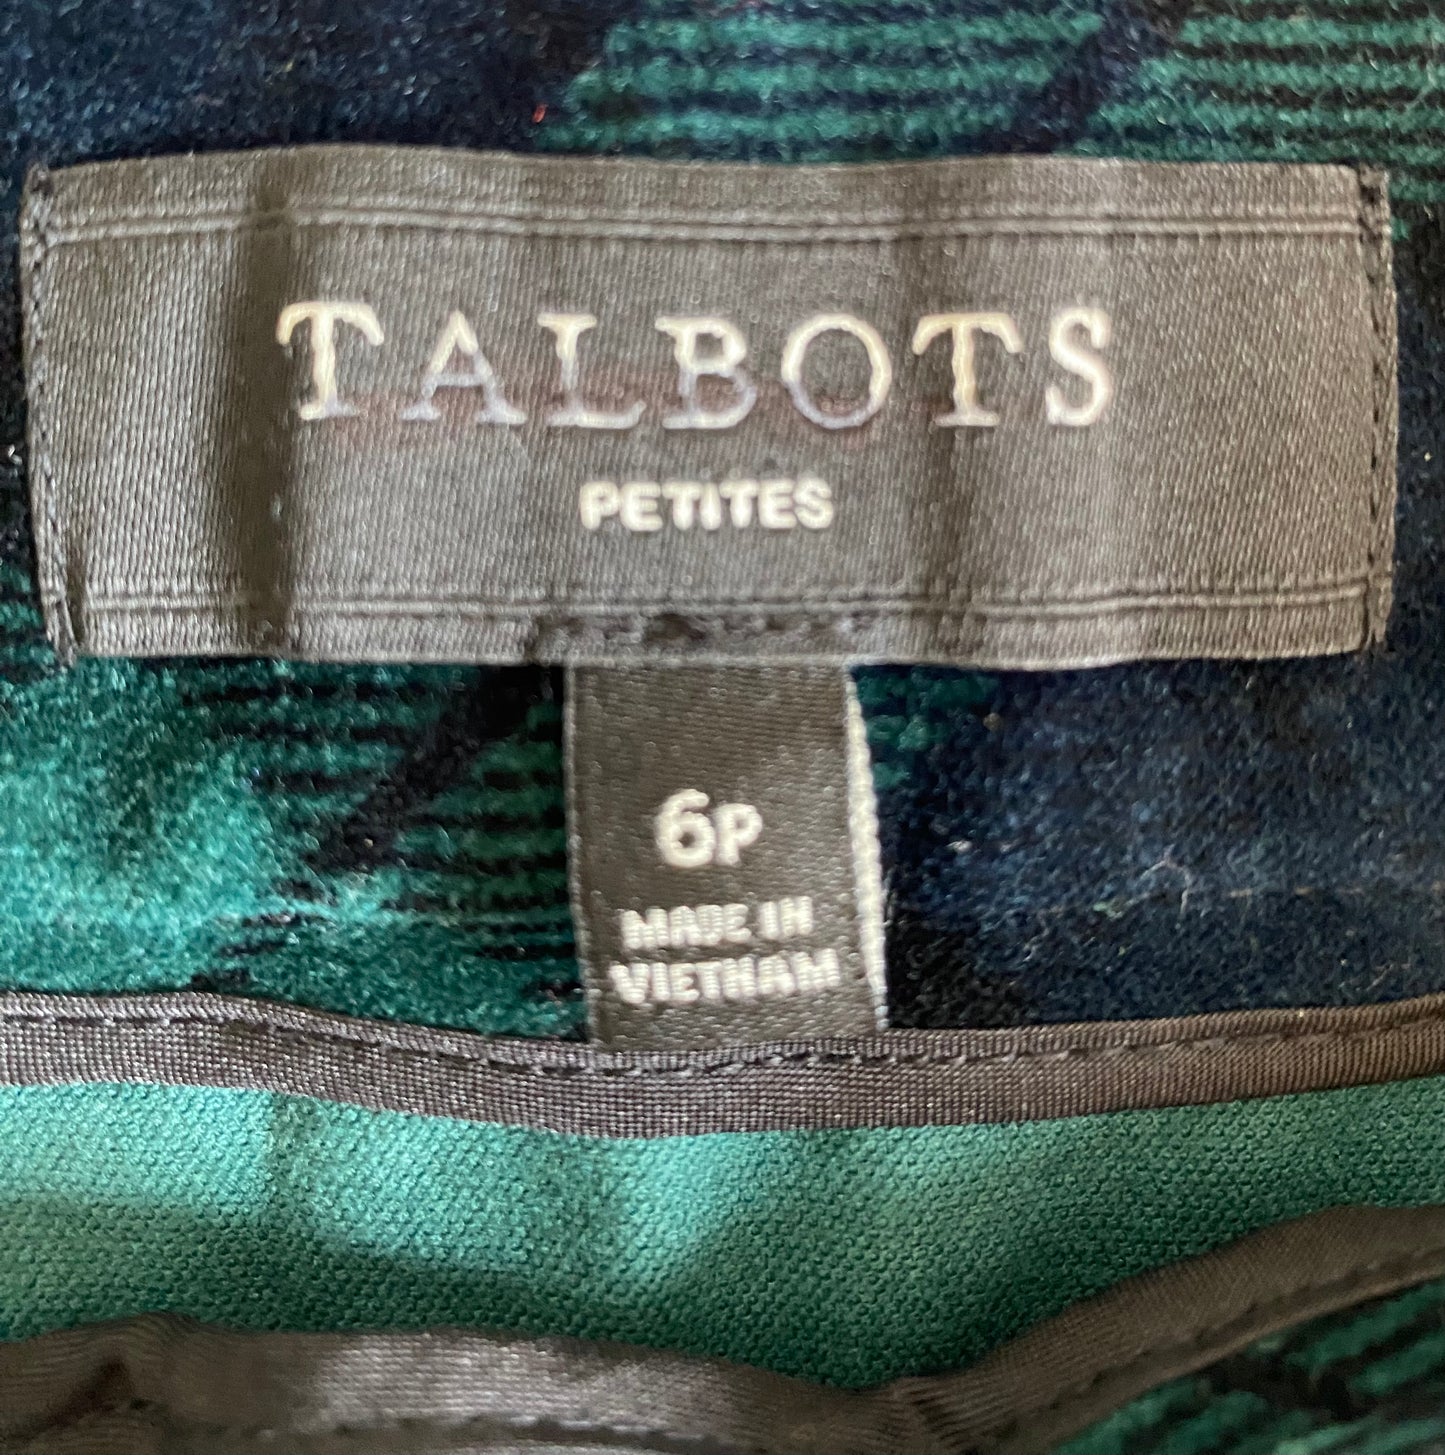 Talbots Blue-Green Velvet Plaid Skirt